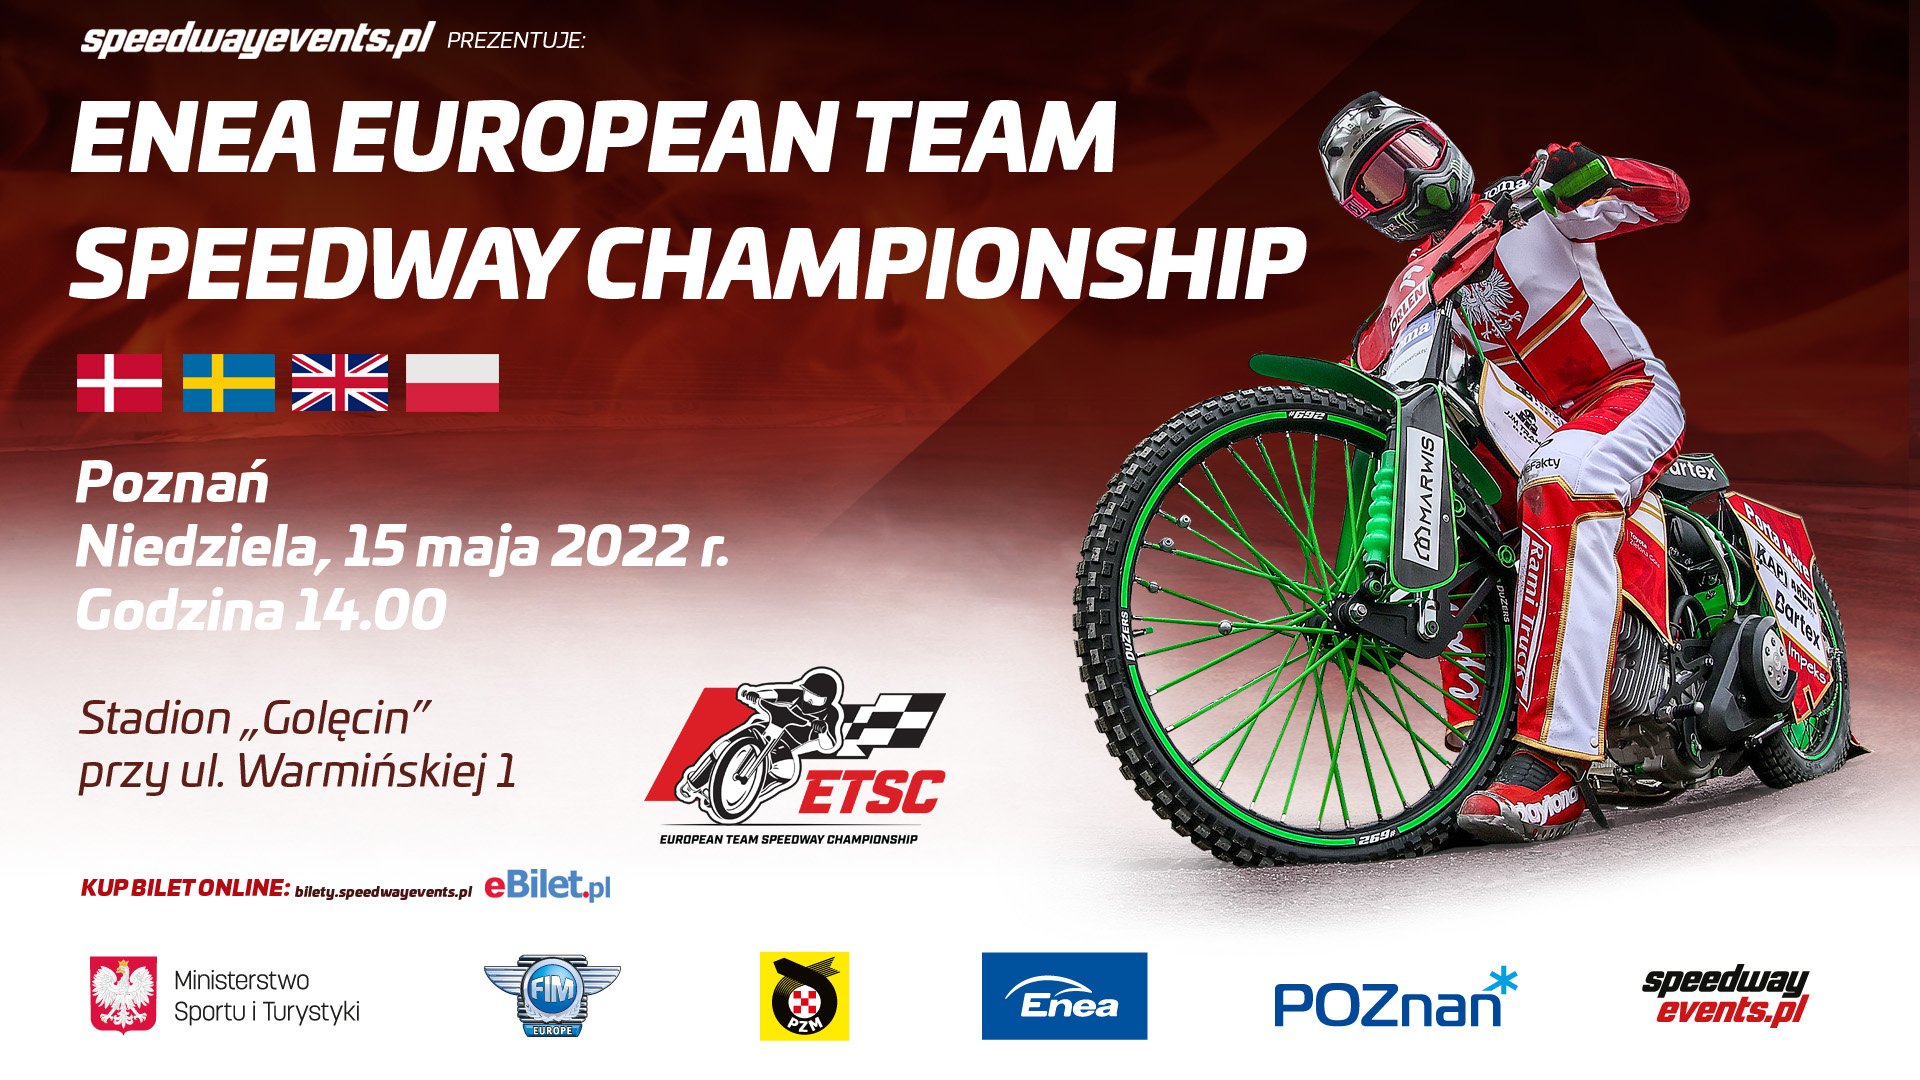 Plakat promujący Enea European Team Speedway Championship 15 maja w Poznaniu